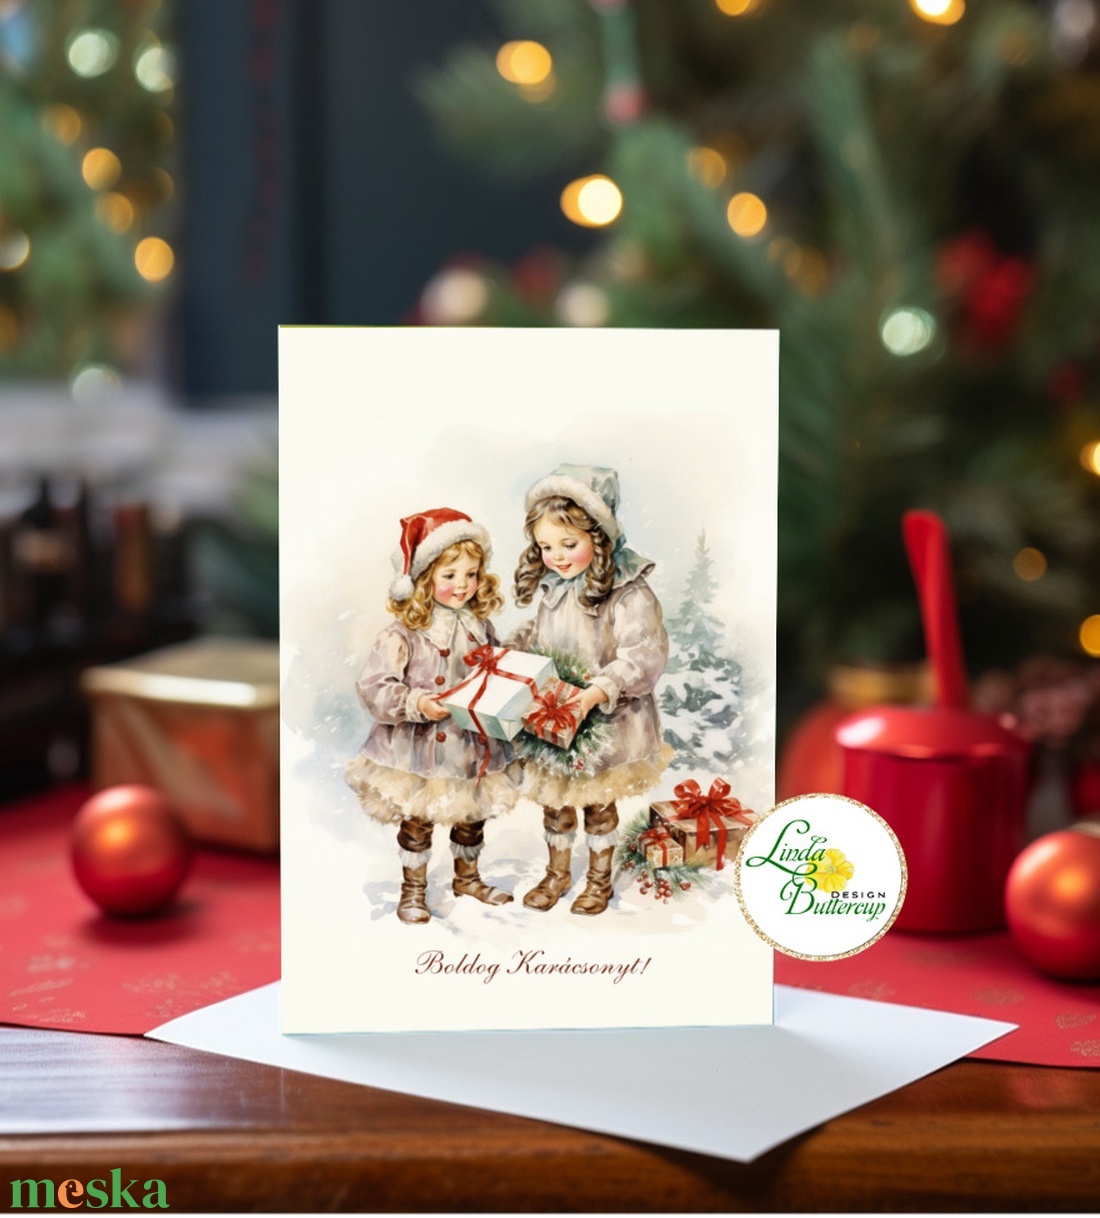 Vintage Karácsonyi Képeslap, retro, kislányok, vinatge, karácsonyi üdvözlőlap, ünnepi képeslap,  régi, táli táj - karácsony - karácsonyi ajándékozás - karácsonyi képeslap, üdvözlőlap, ajándékkísérő - Meska.hu